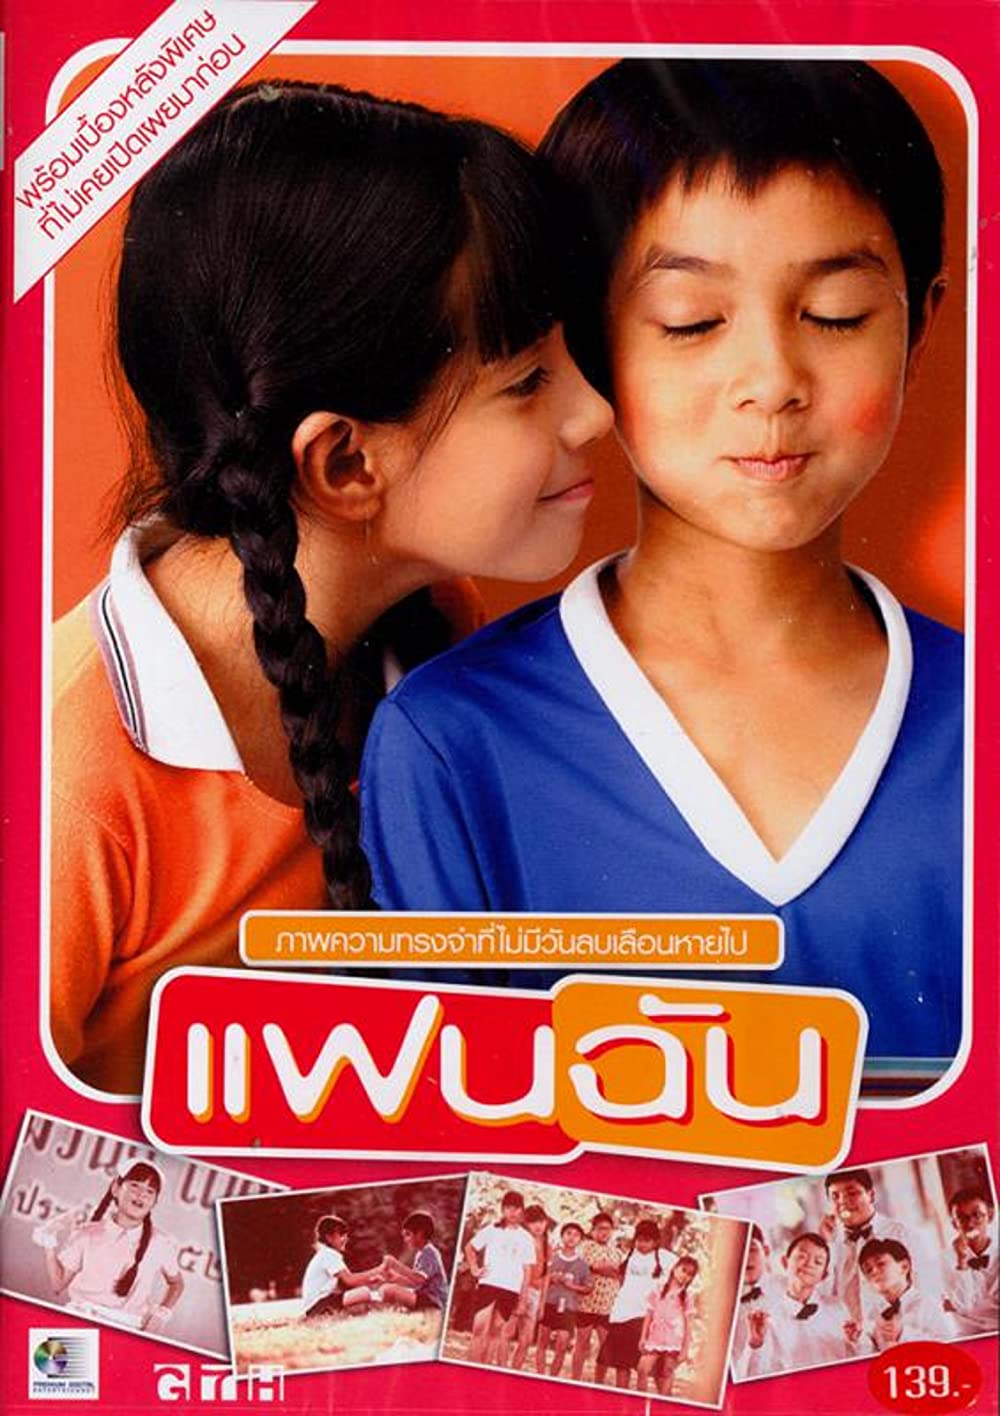 Những bộ phim học đường Thái Lan hay nhất: Cô gái của tôi - My girl (2003)